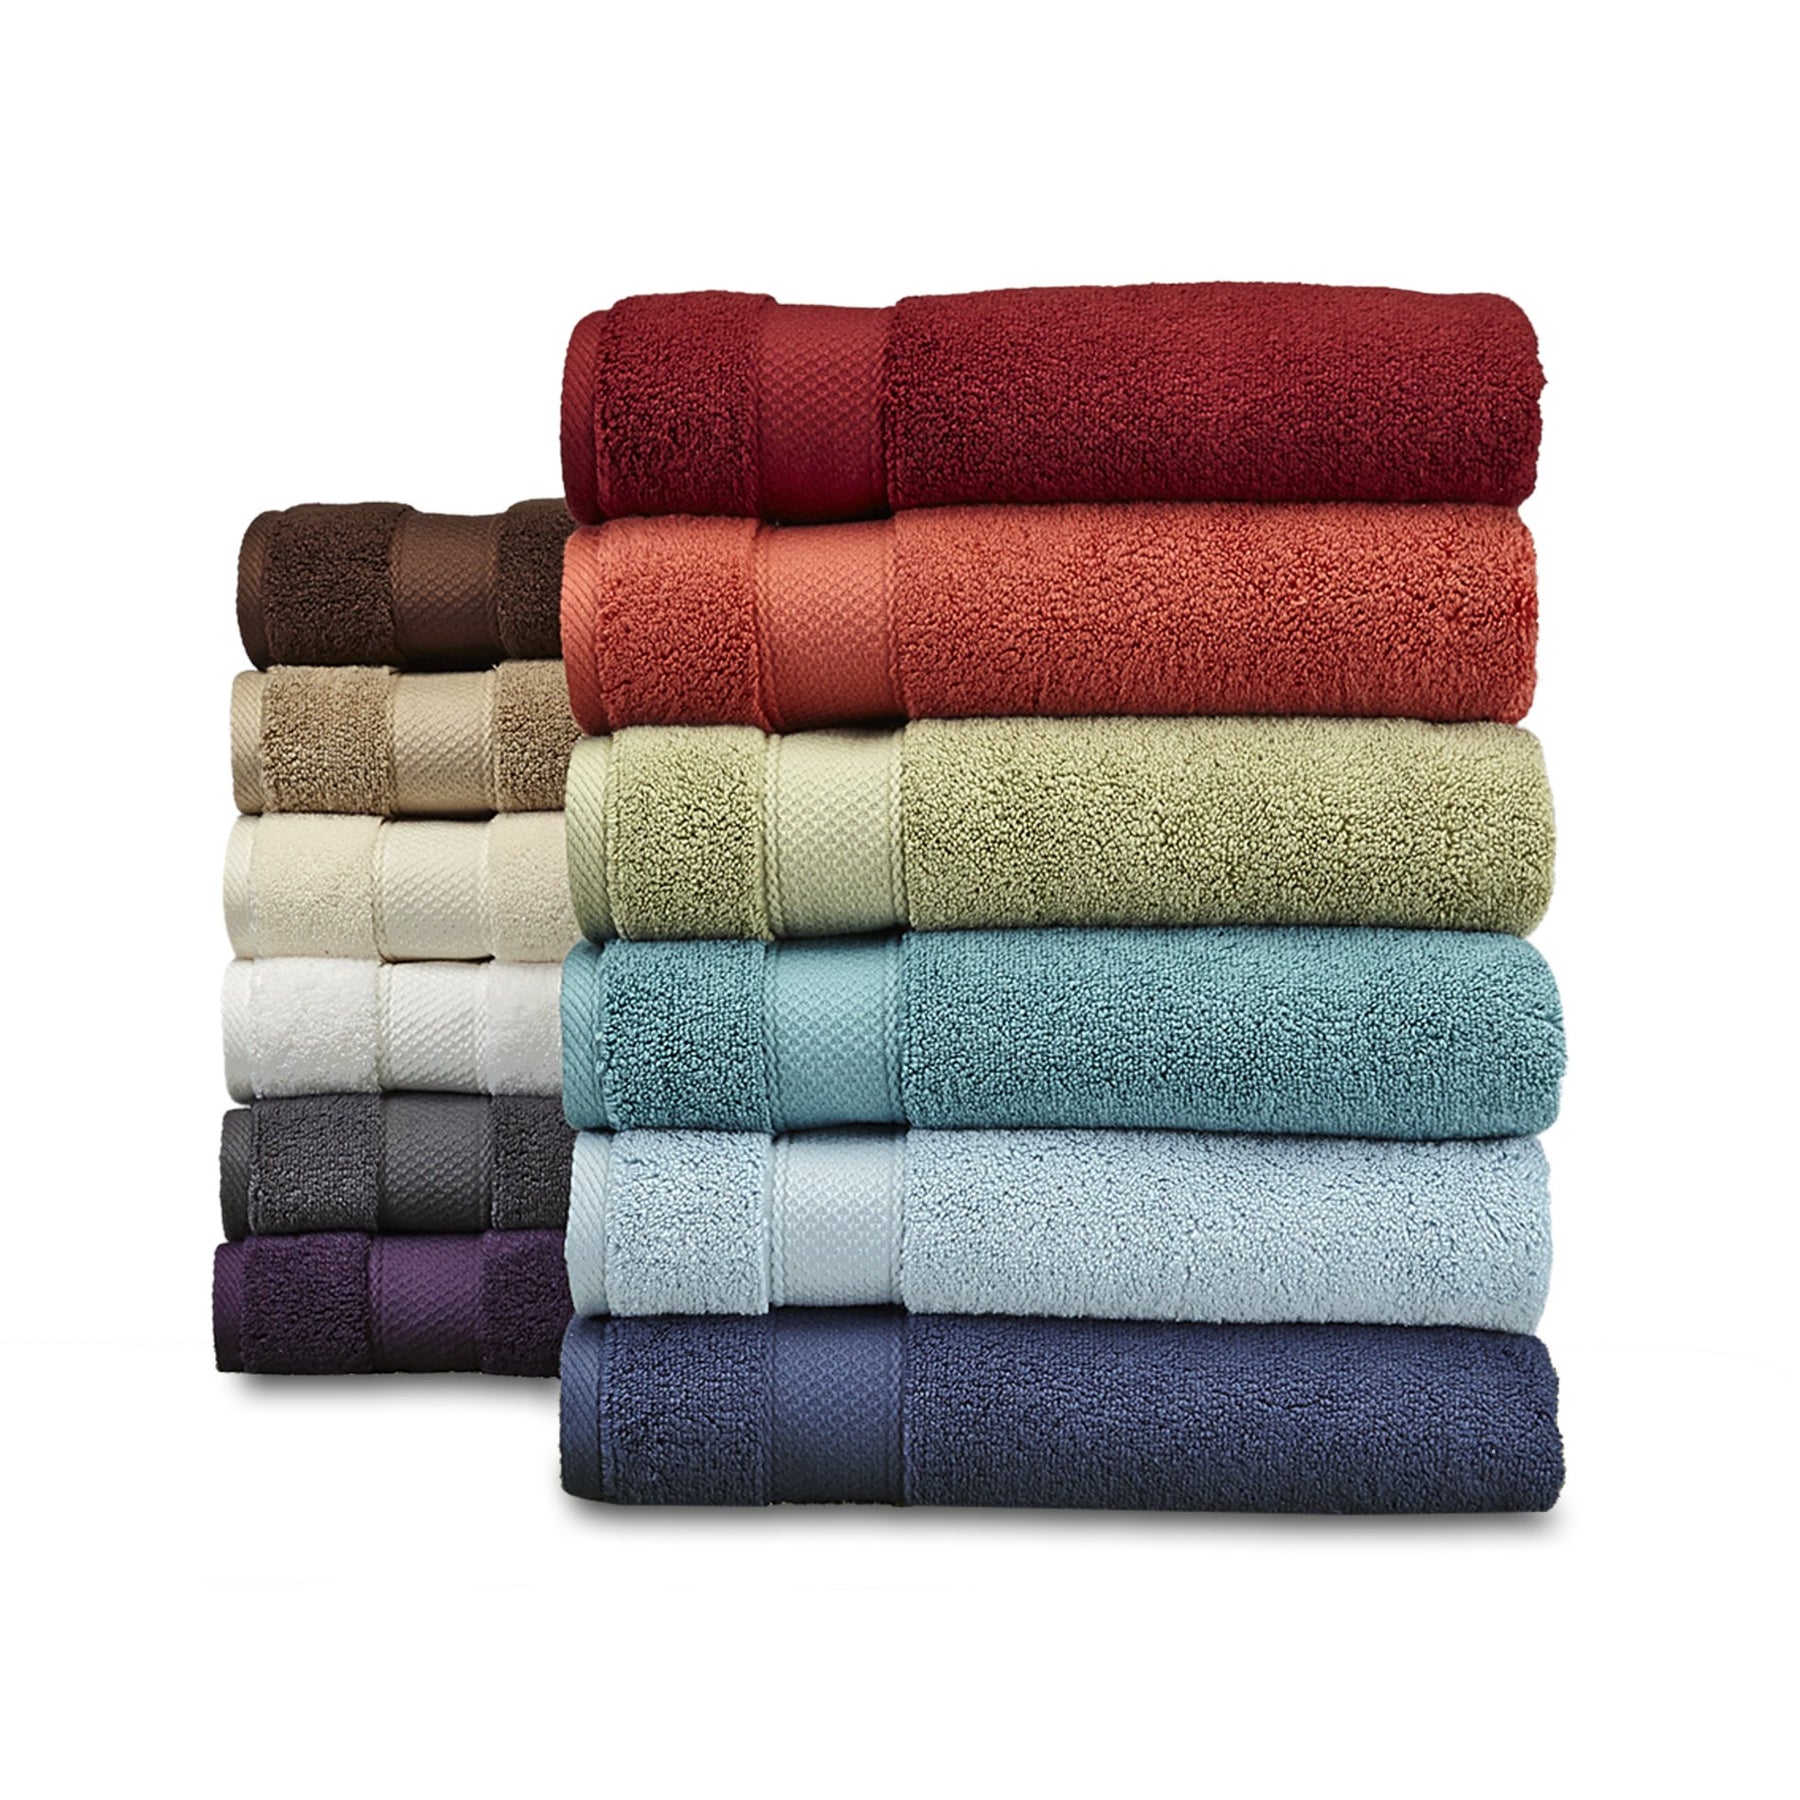 https://downcotton.com/cdn/shop/products/100-ring-spun-cotton-premium-8-piece-towel-sets-towel-sets-down-cotton-870489_1800x1800.jpg?v=1601582353